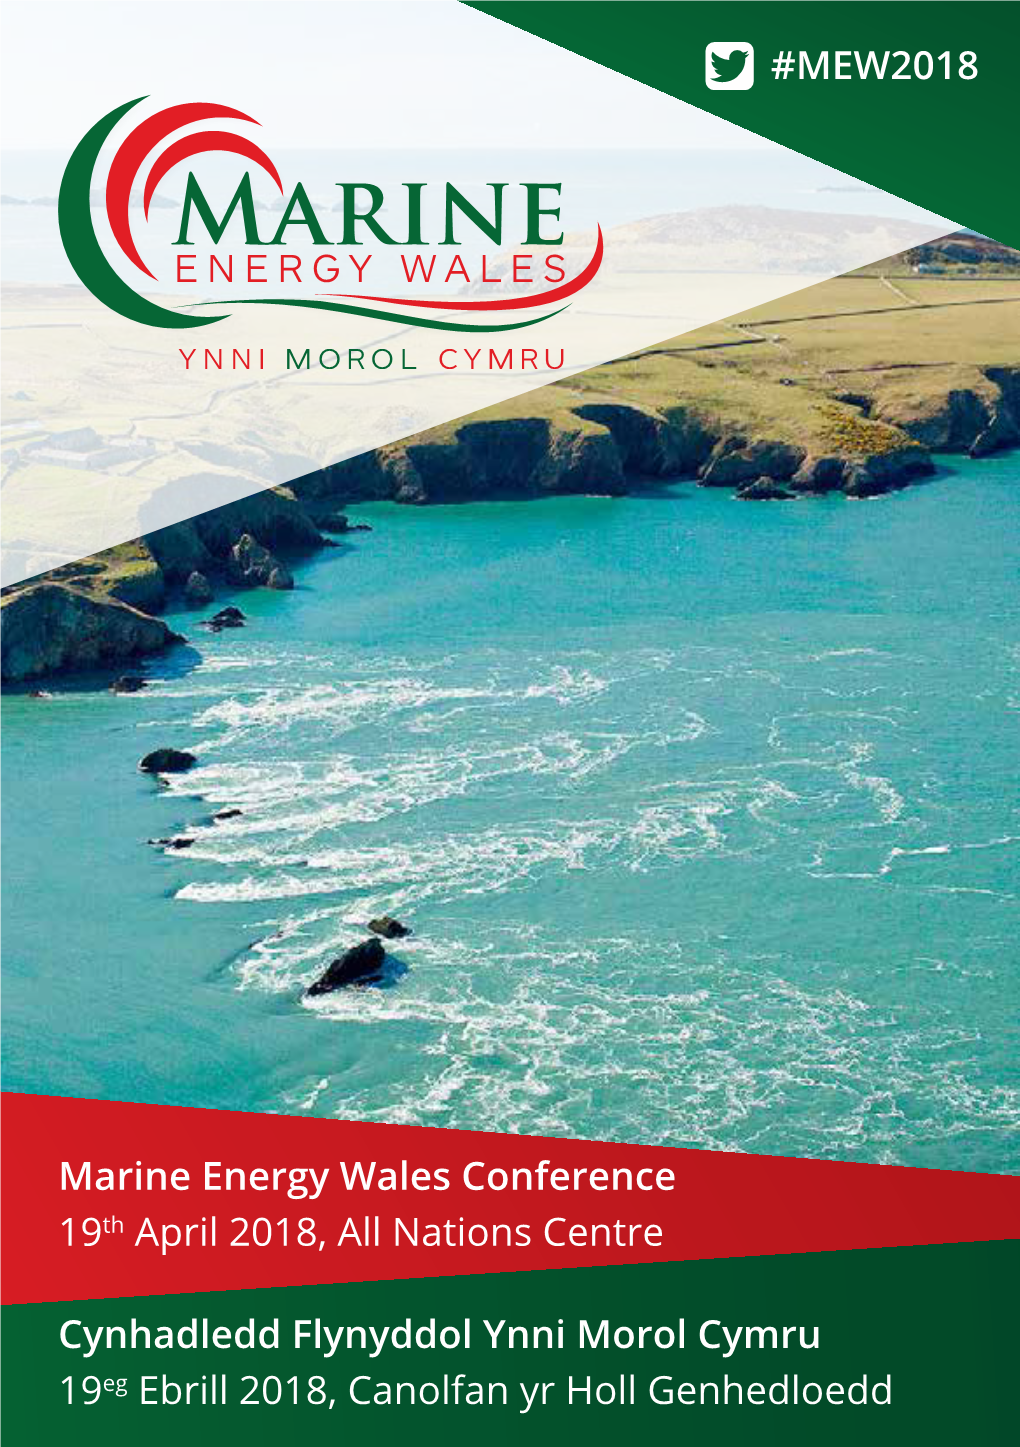 MEW2018 Marine Energy Wales Conference 19Th April 2018, All Nations Centre Cynhadledd Flynyddol Ynni Morol Cymru 19Eg Ebrill 20